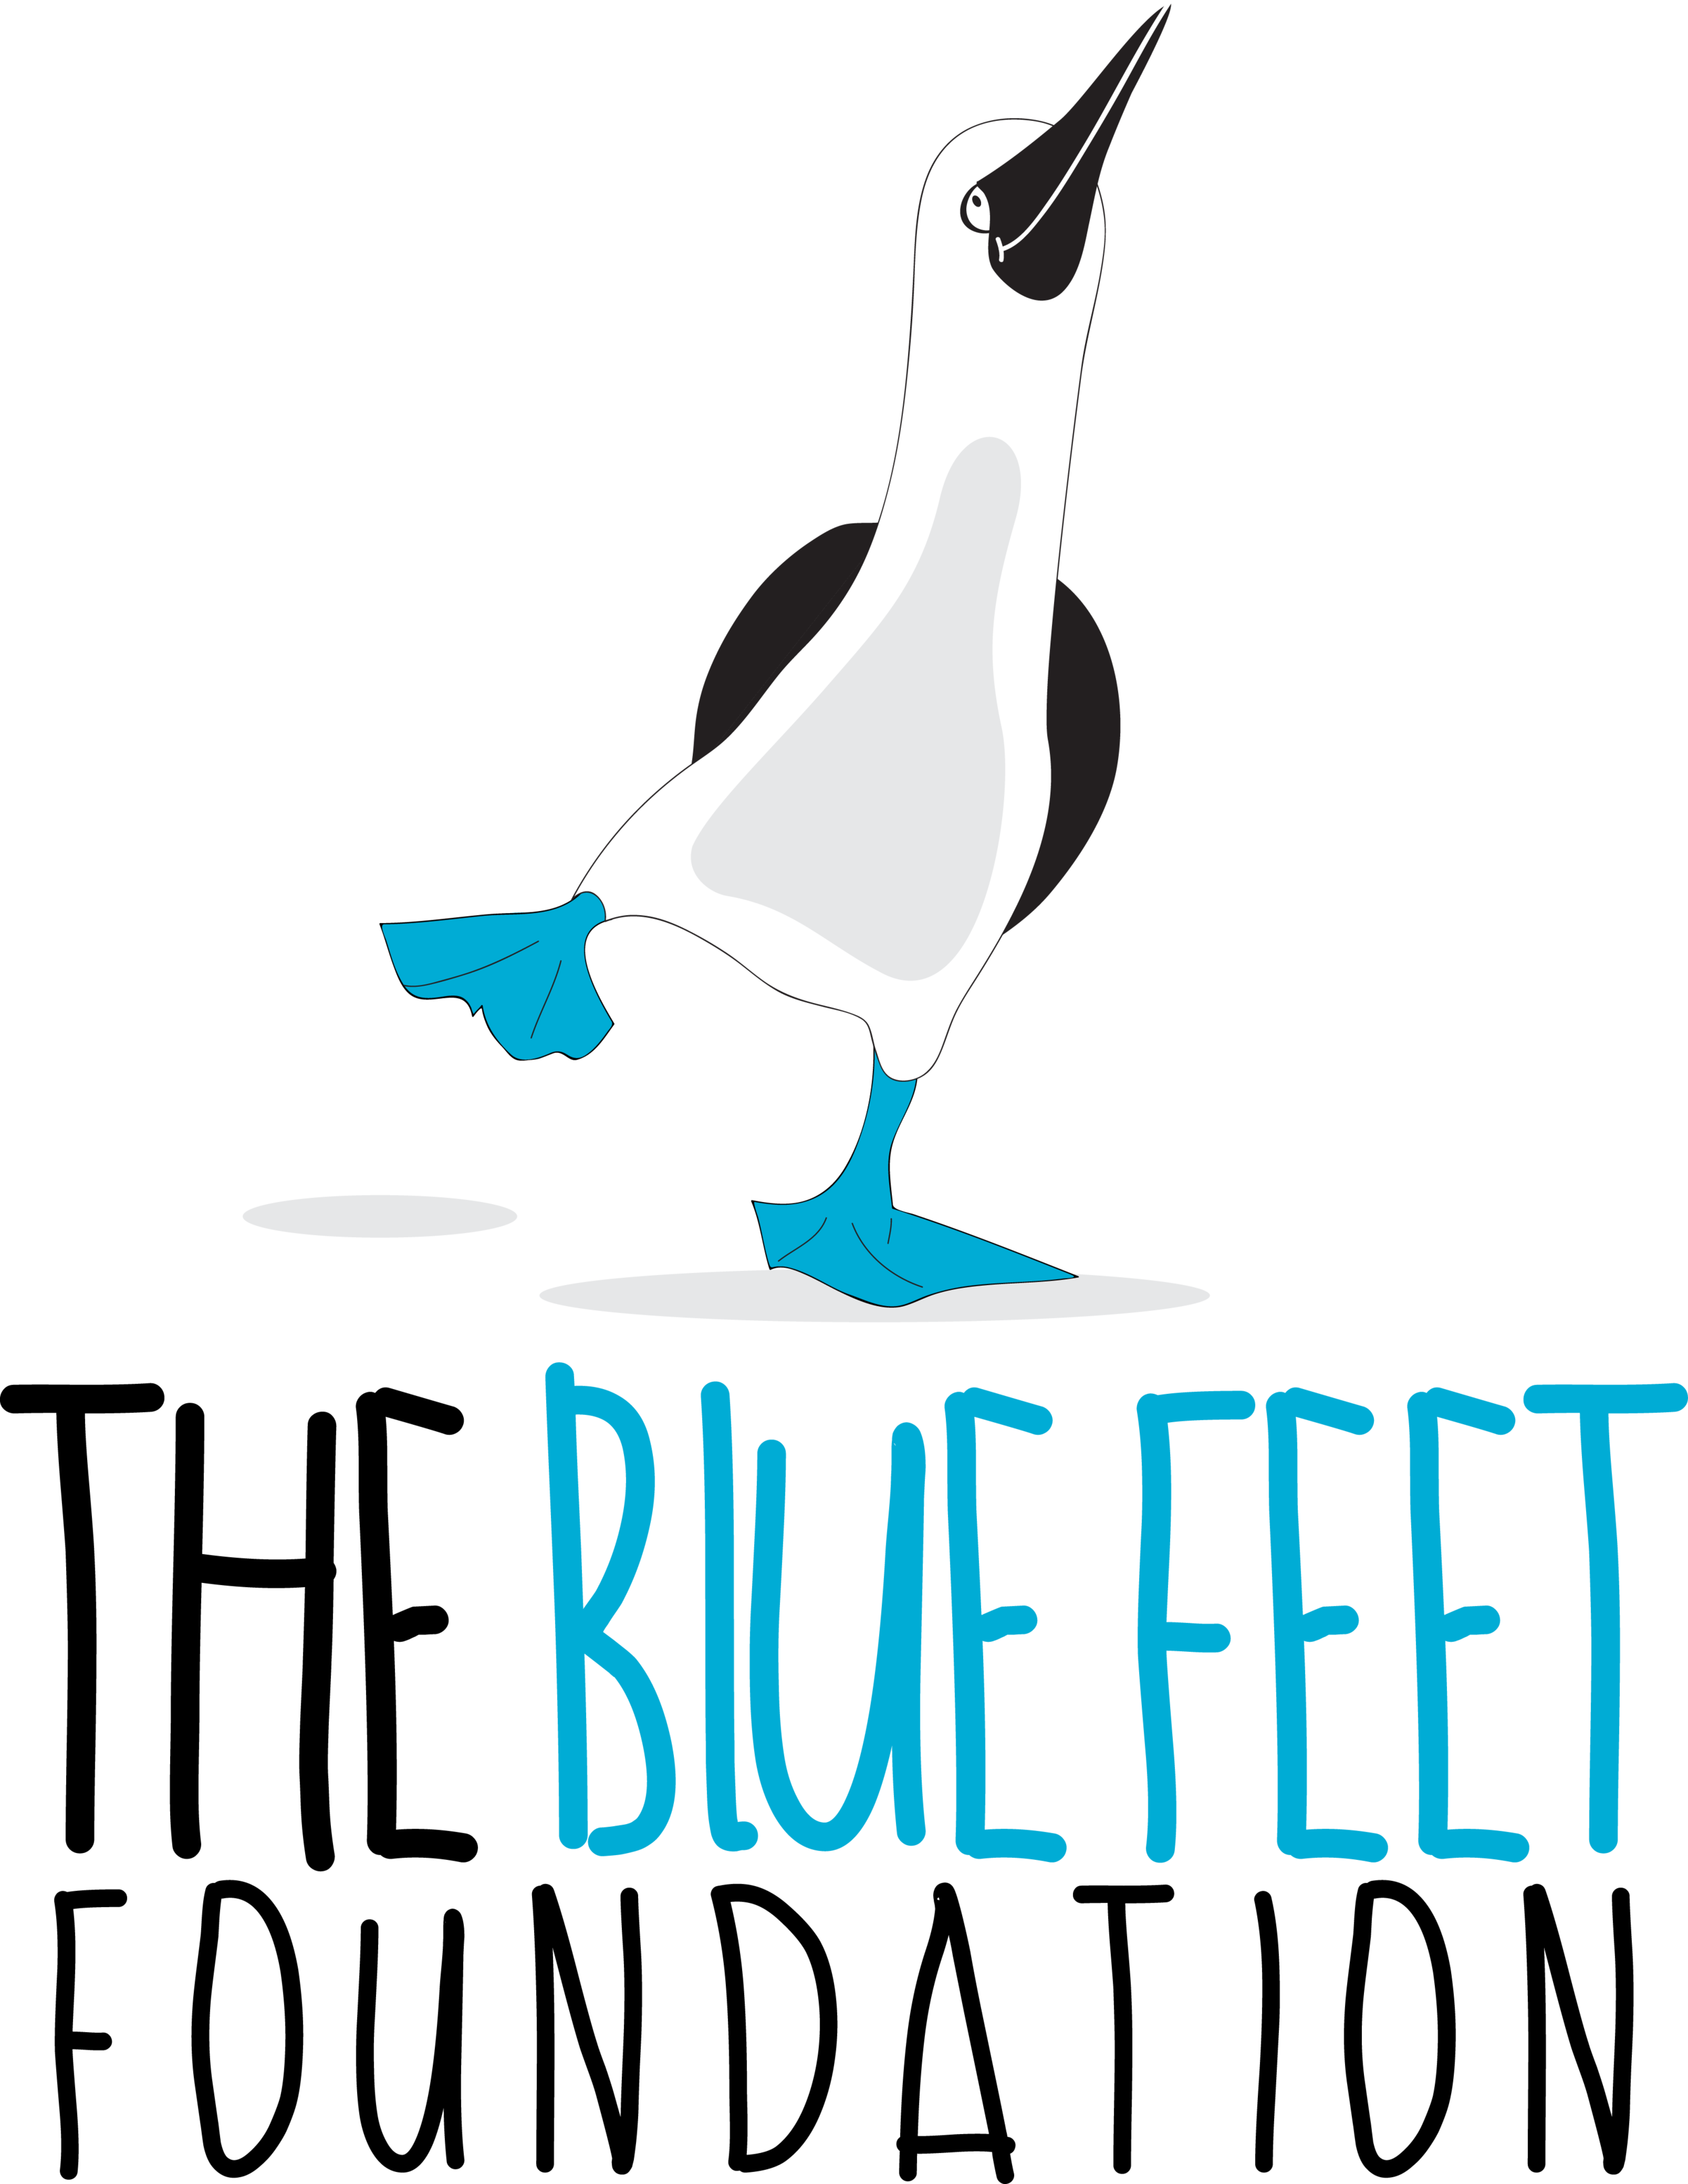 Blue Feet Foundation